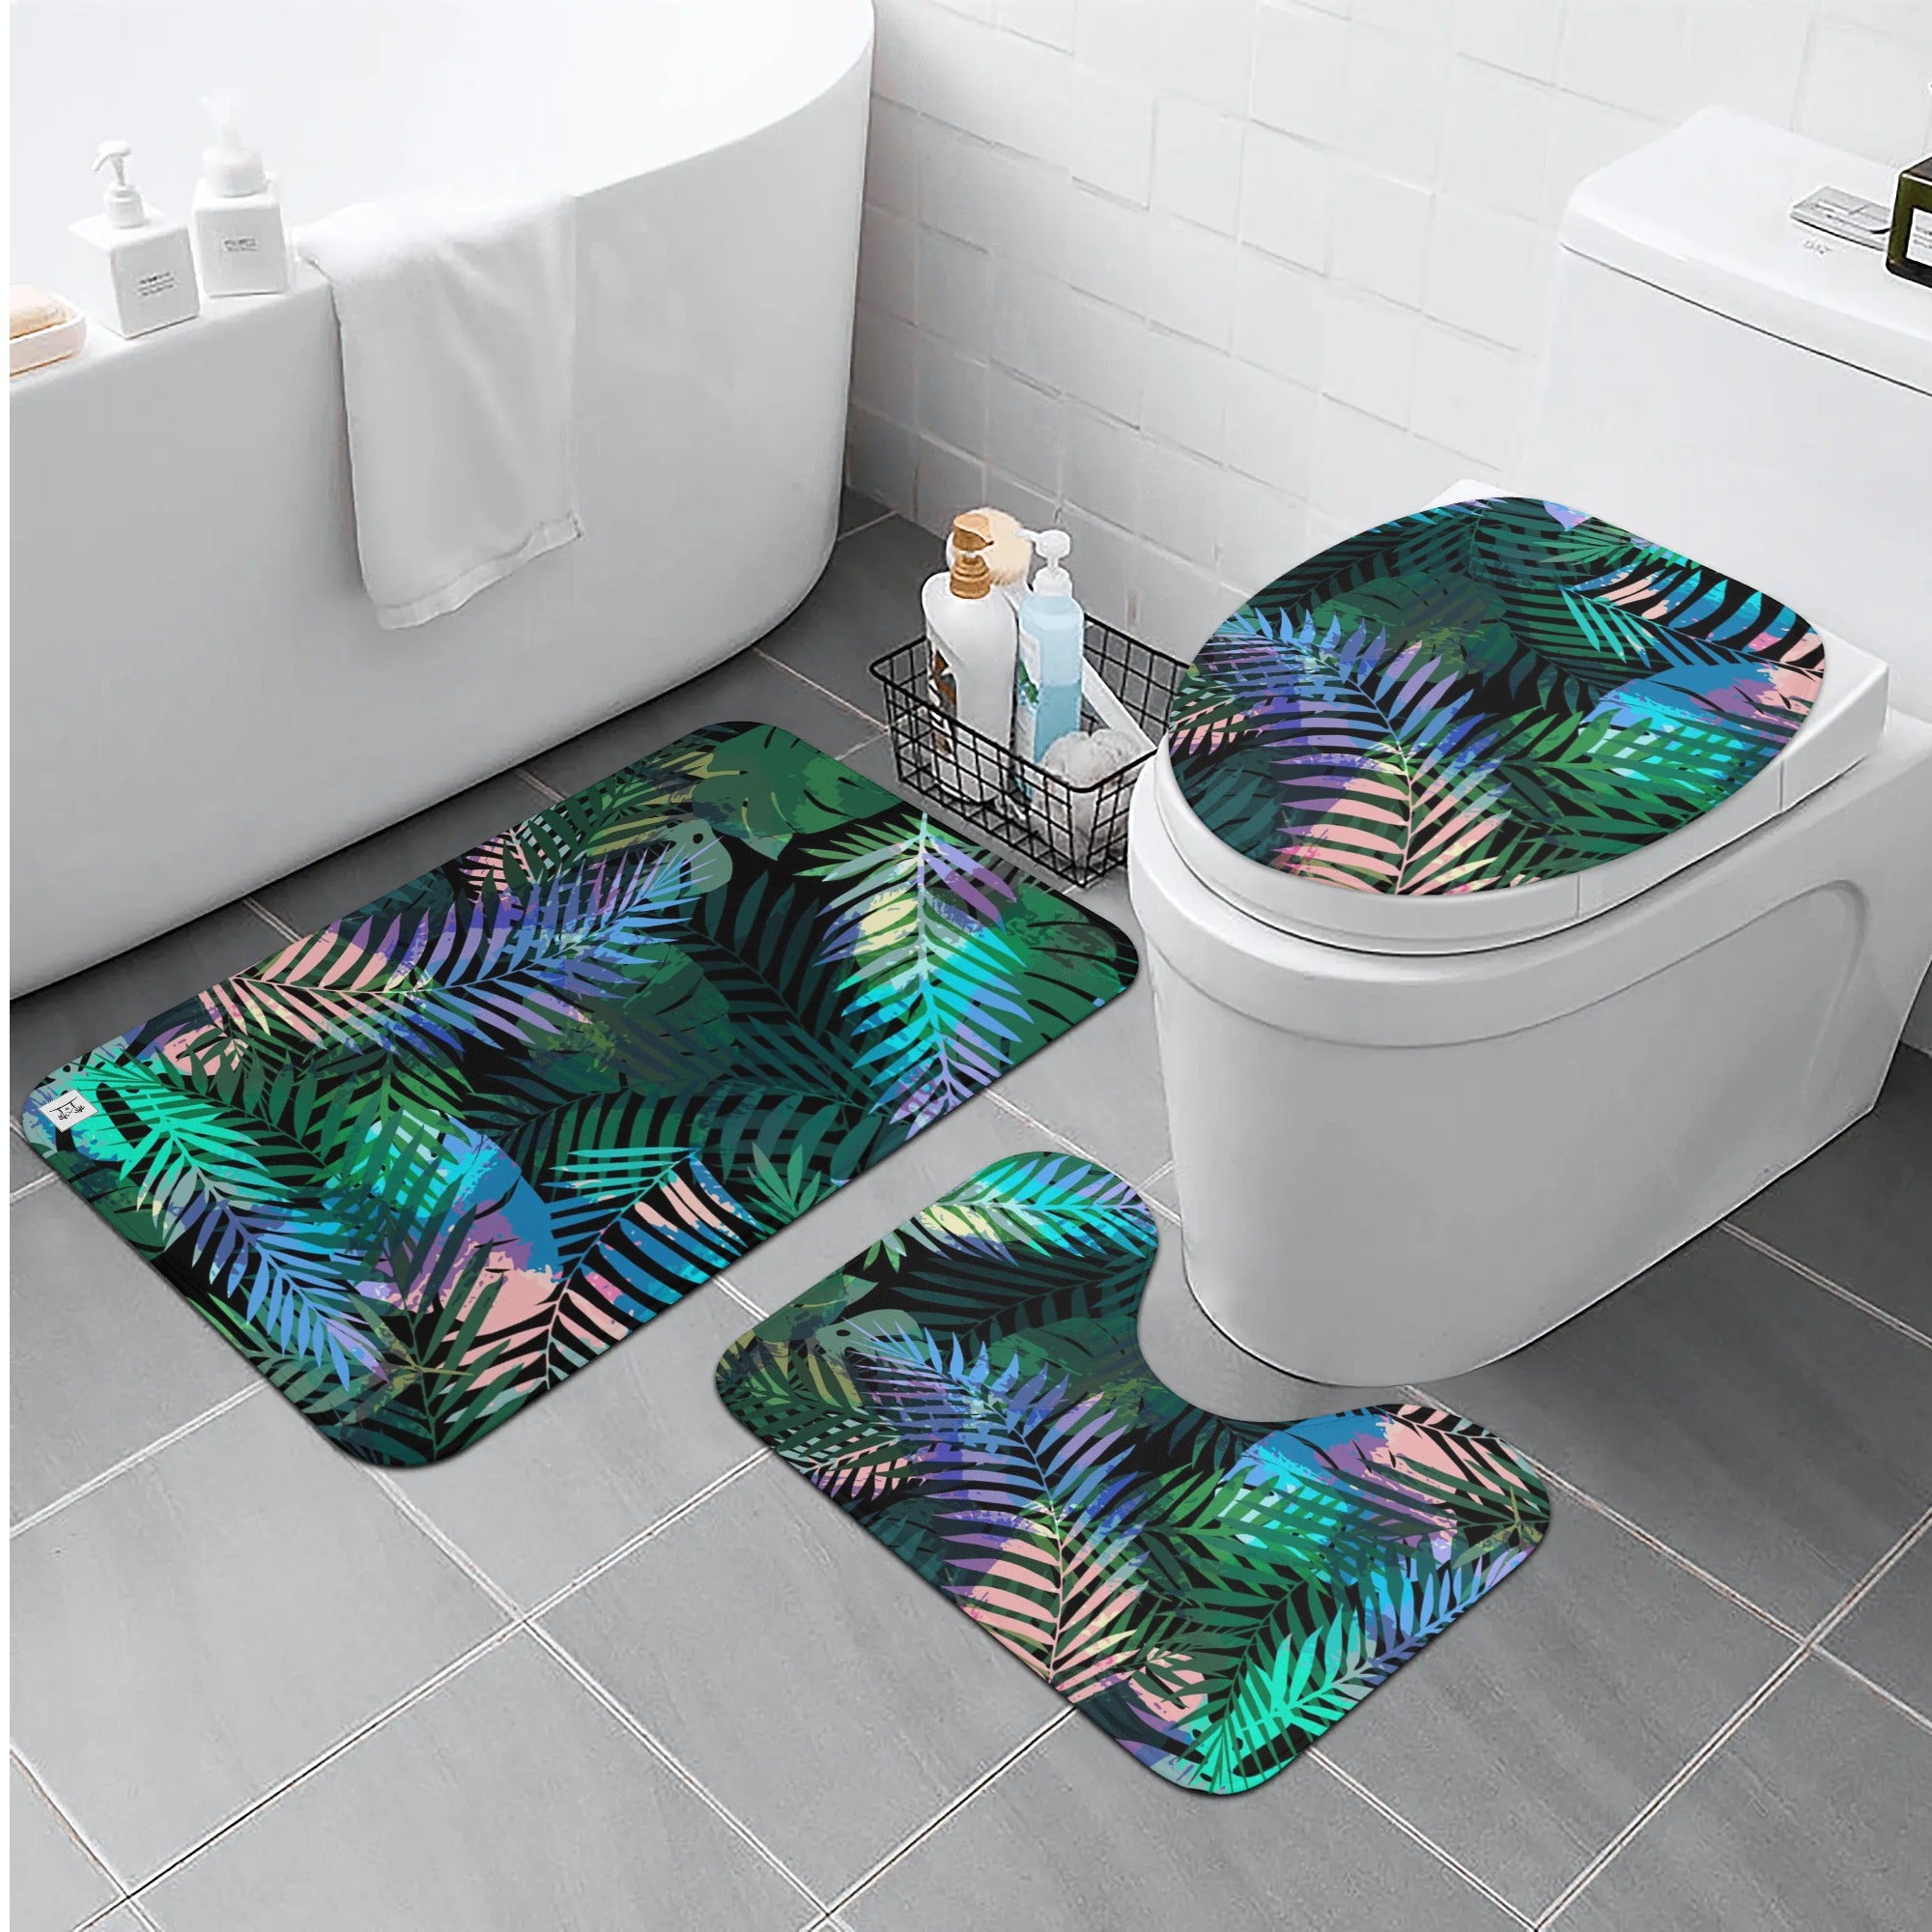 Three-Piece Bath Mat Set - Tropical Print in Peacock